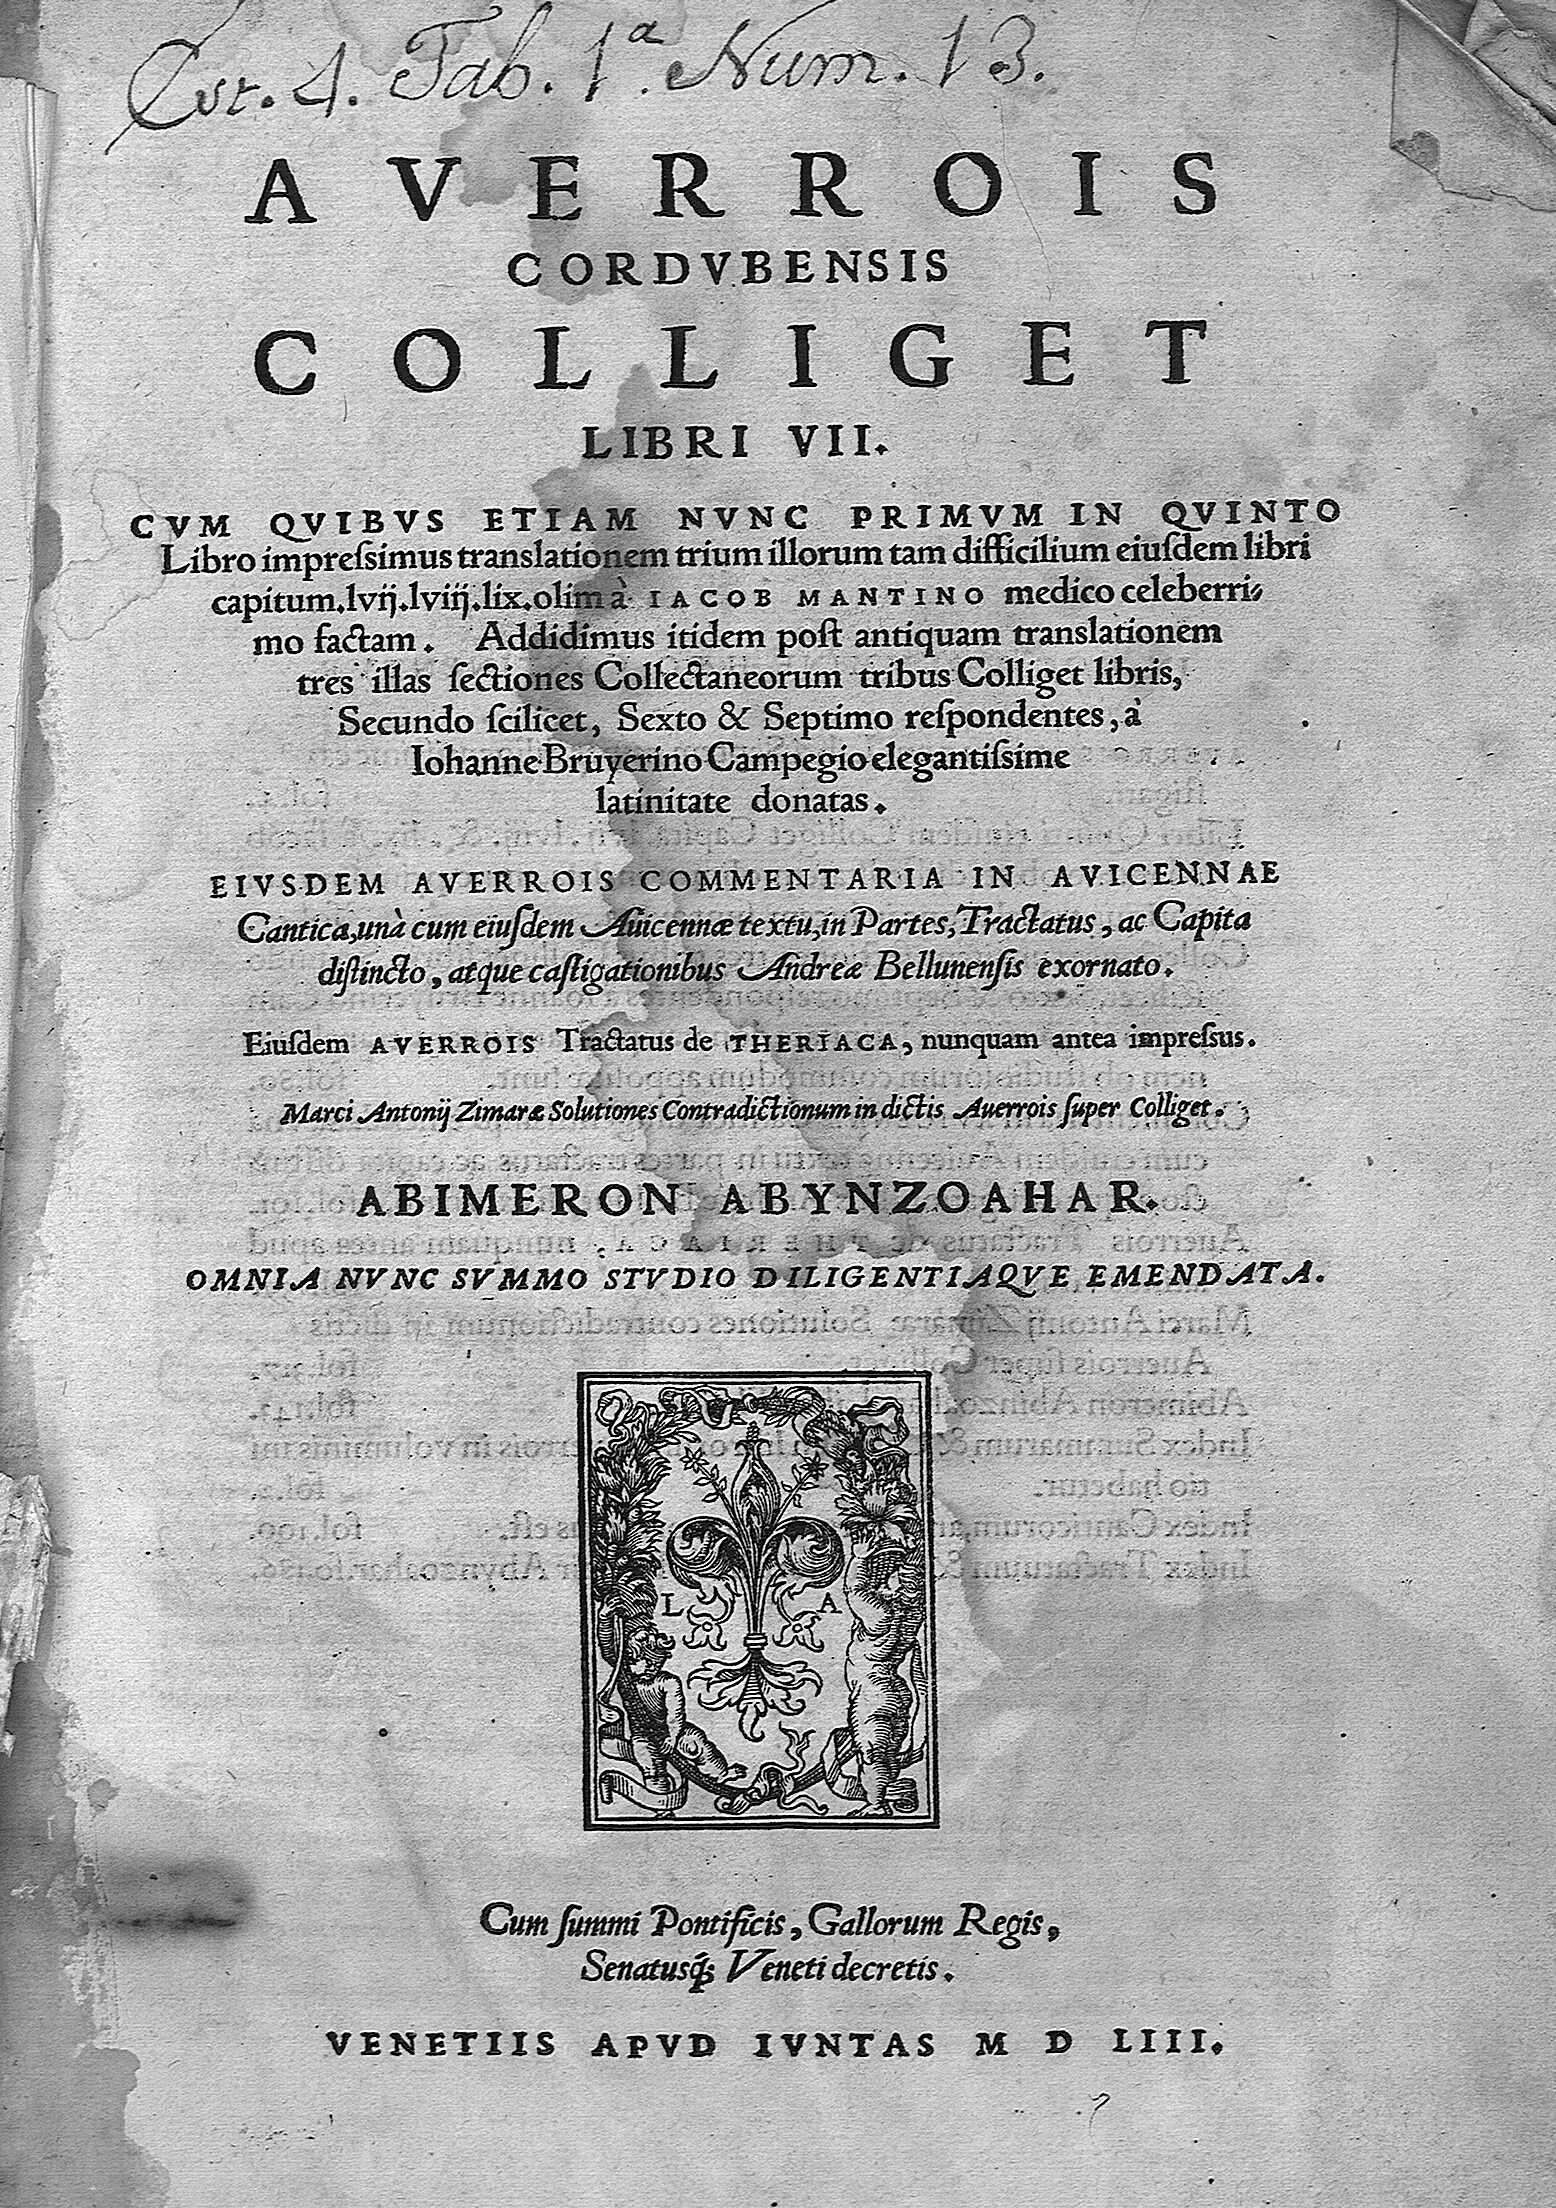 Averrois cordubensis colliget. Libri VII...